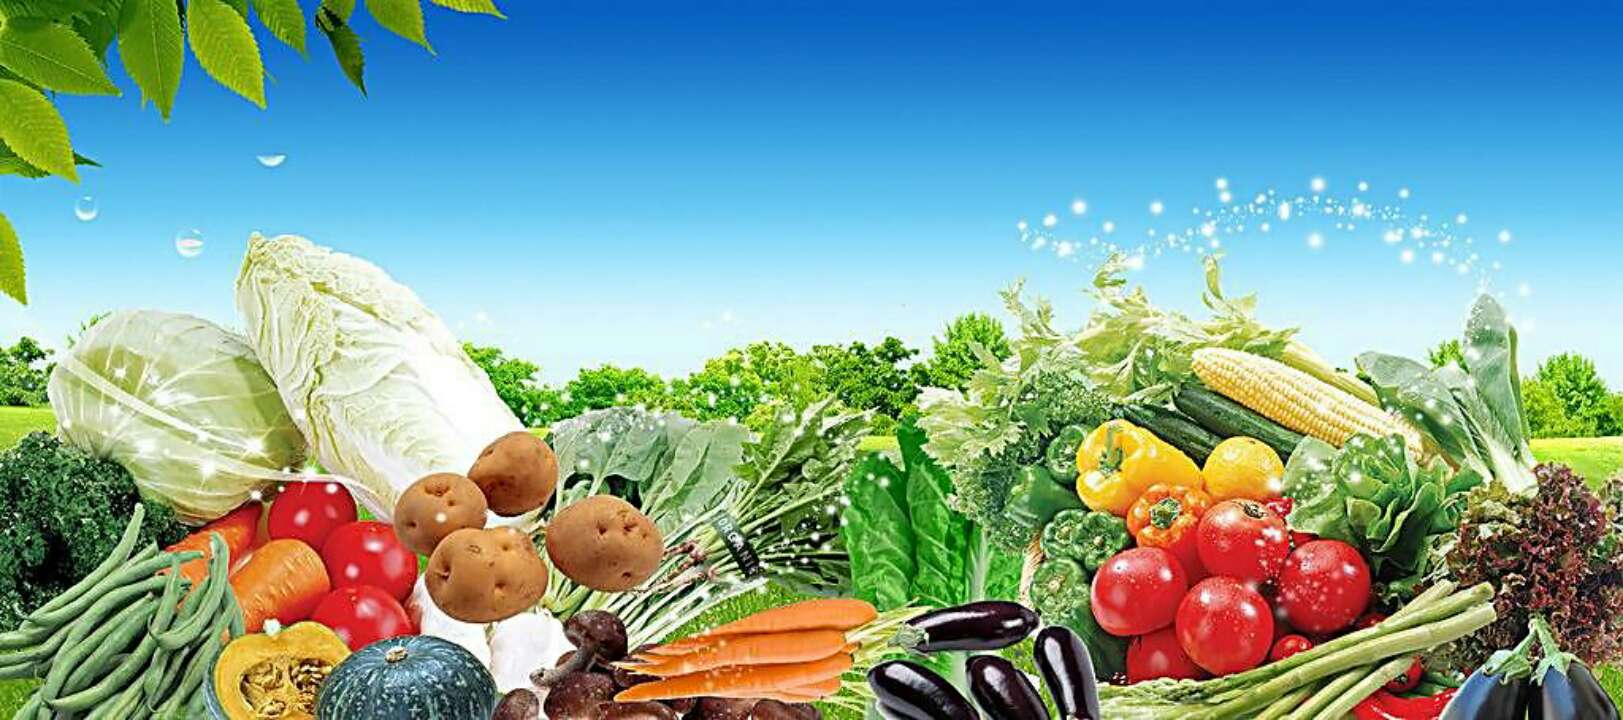 山东生活必需品价格继续走低 蔬菜批发均价3.87元/公斤